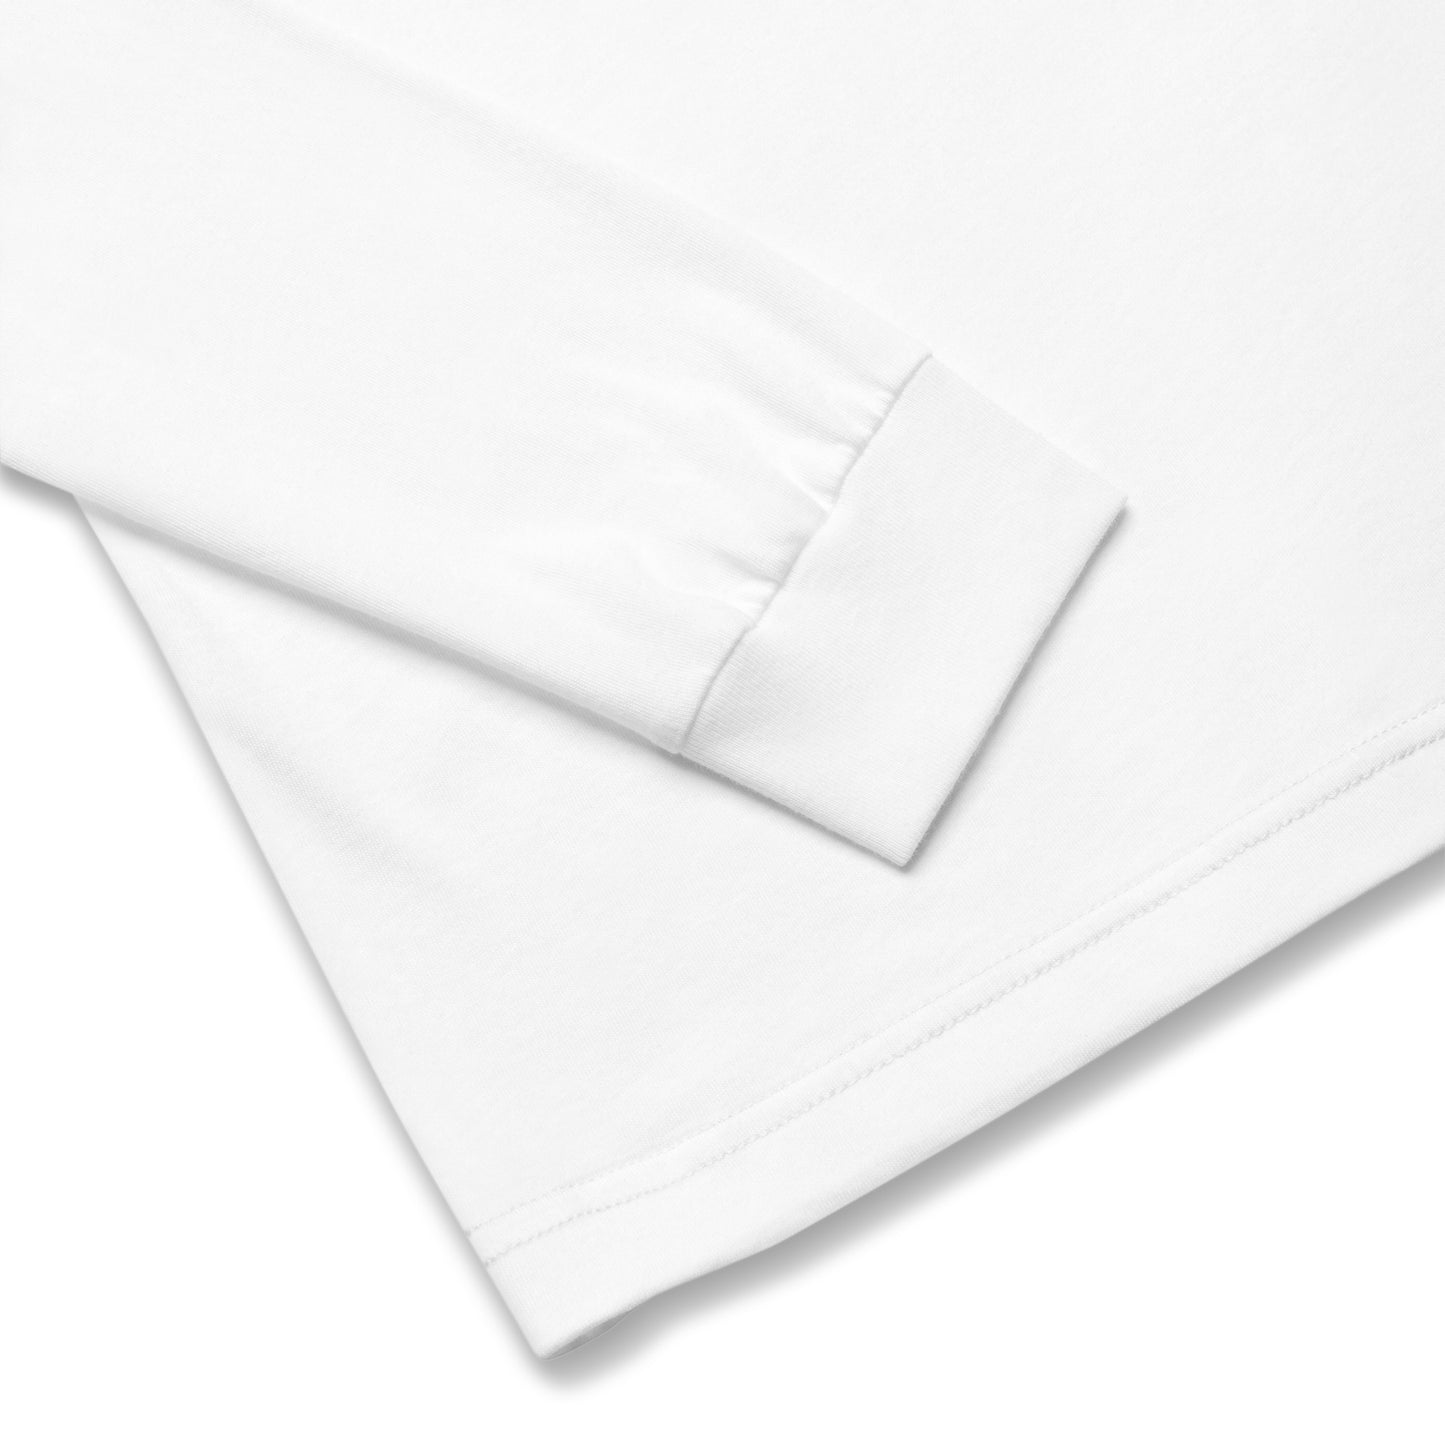 Miami Slice unisex long-sleeve shirt